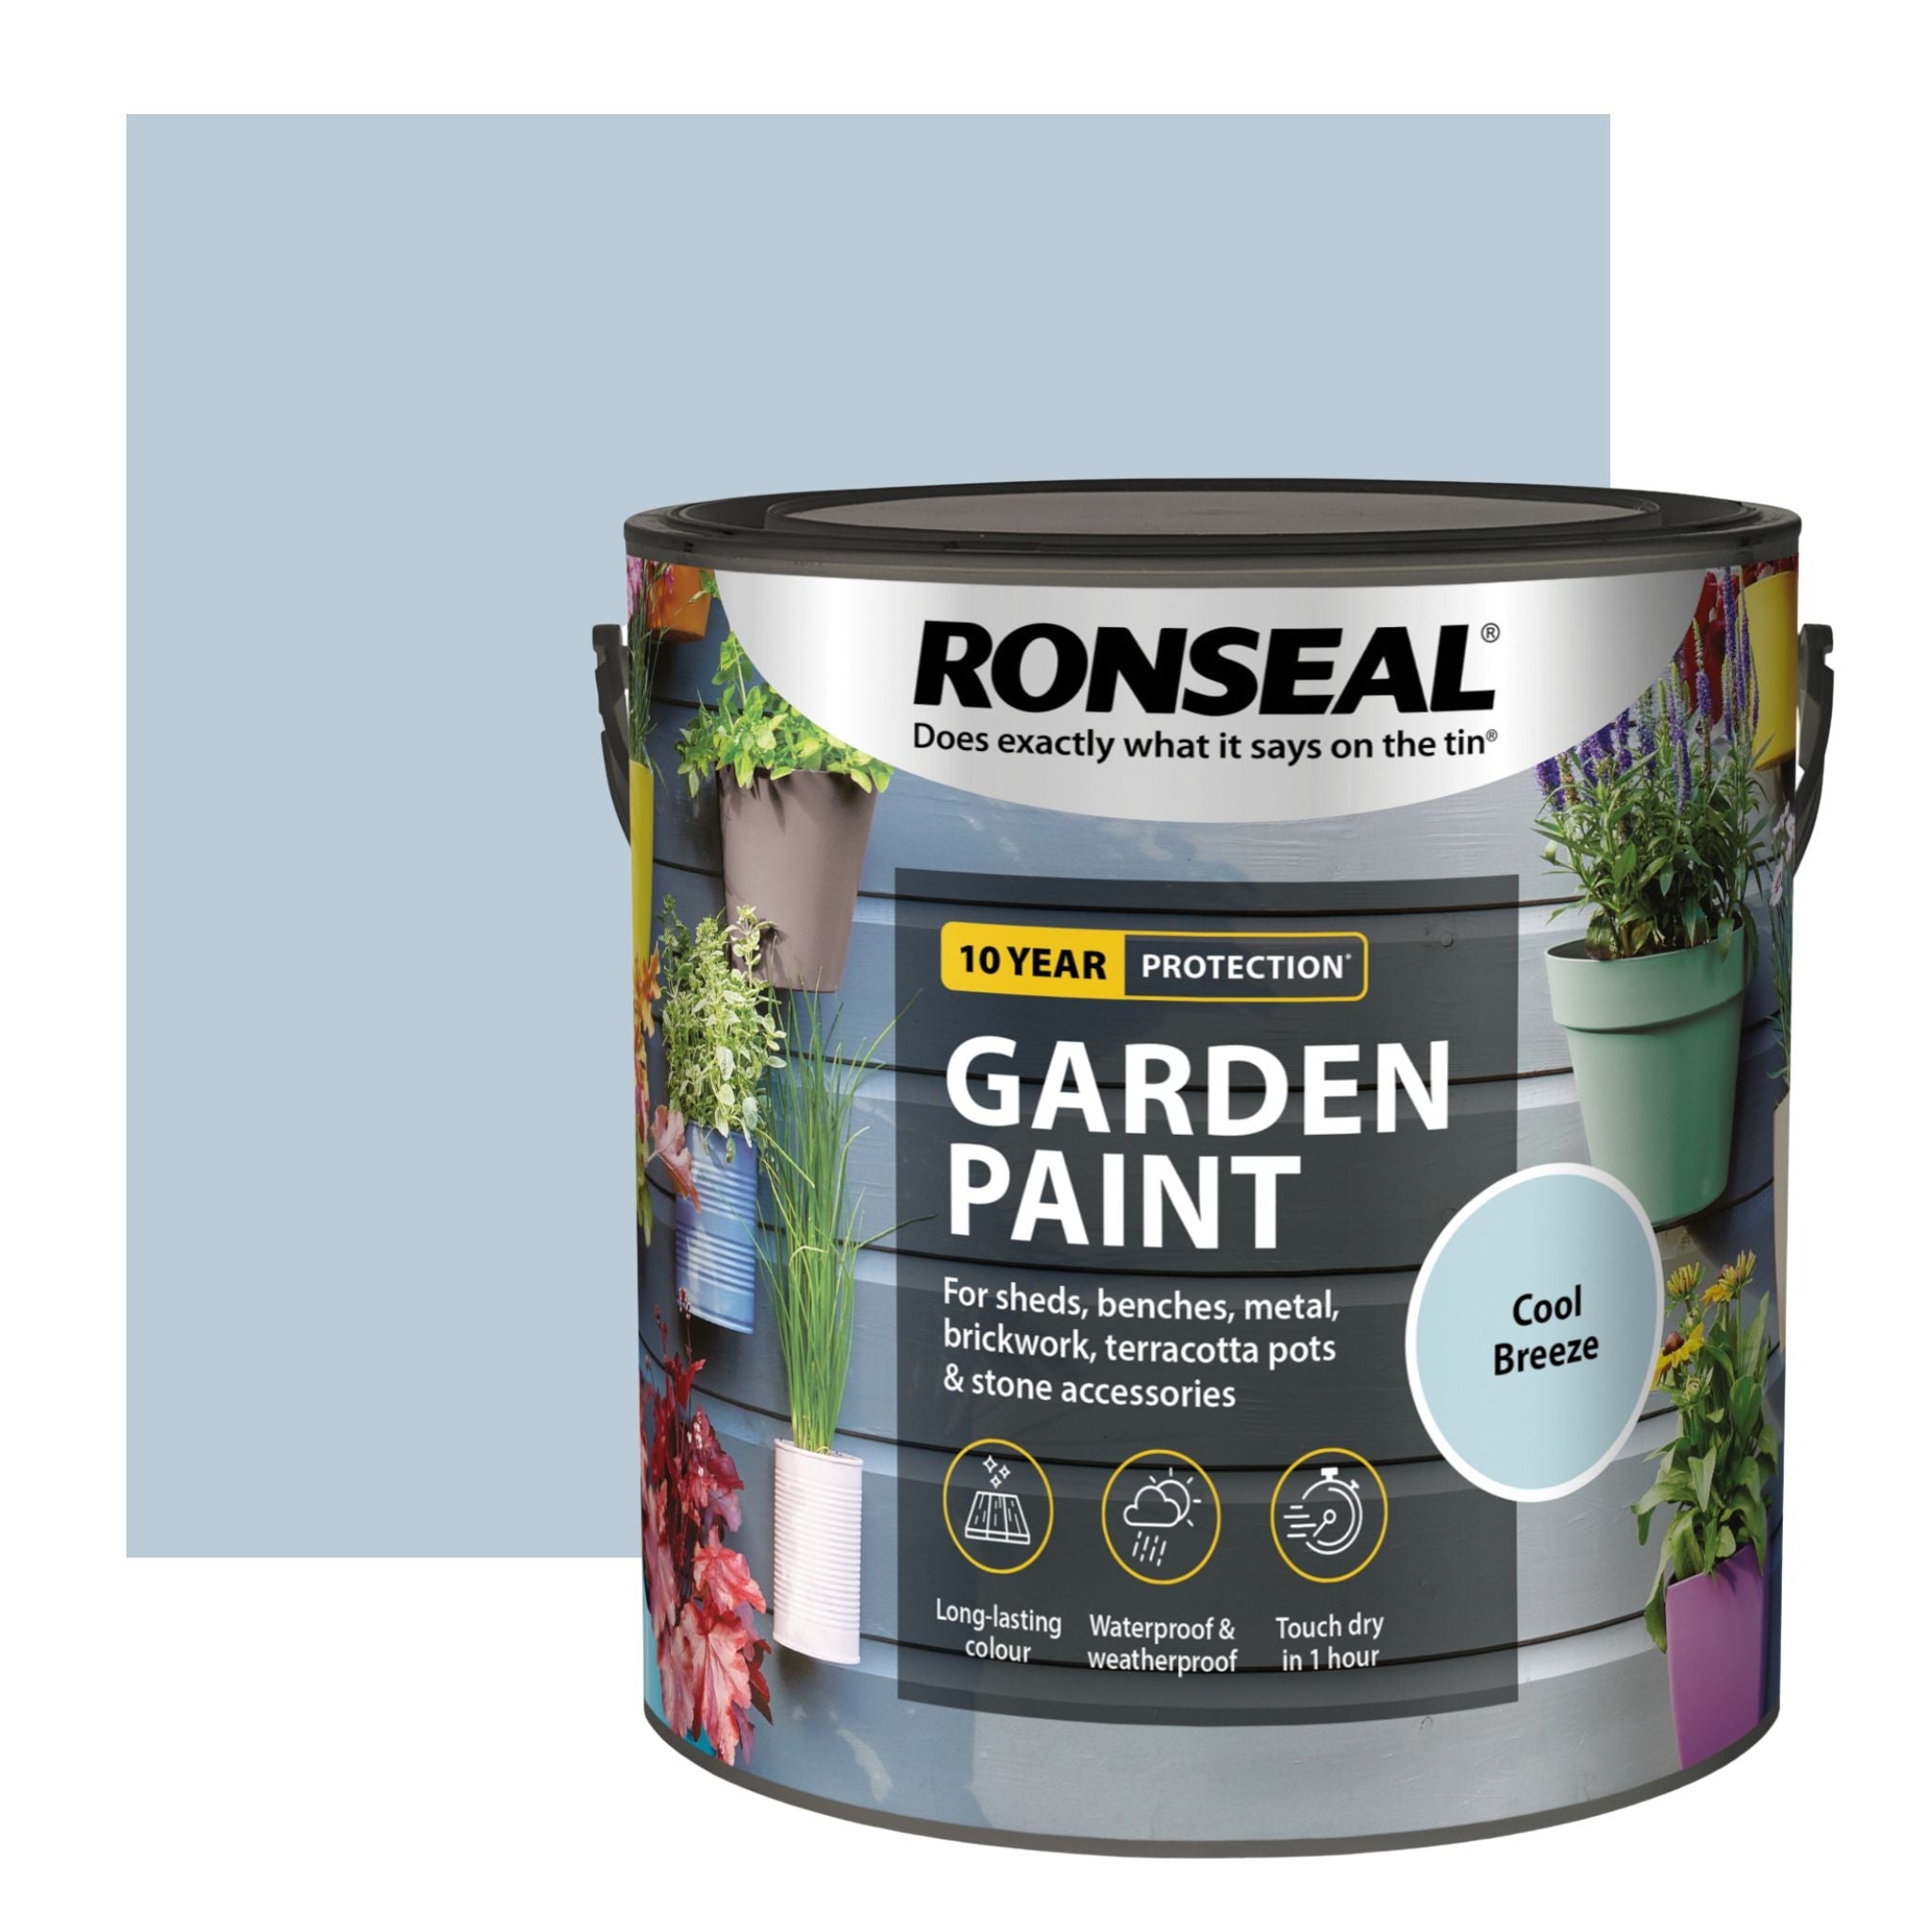 Ronseal Garden Paint - Restorate-5010214874224